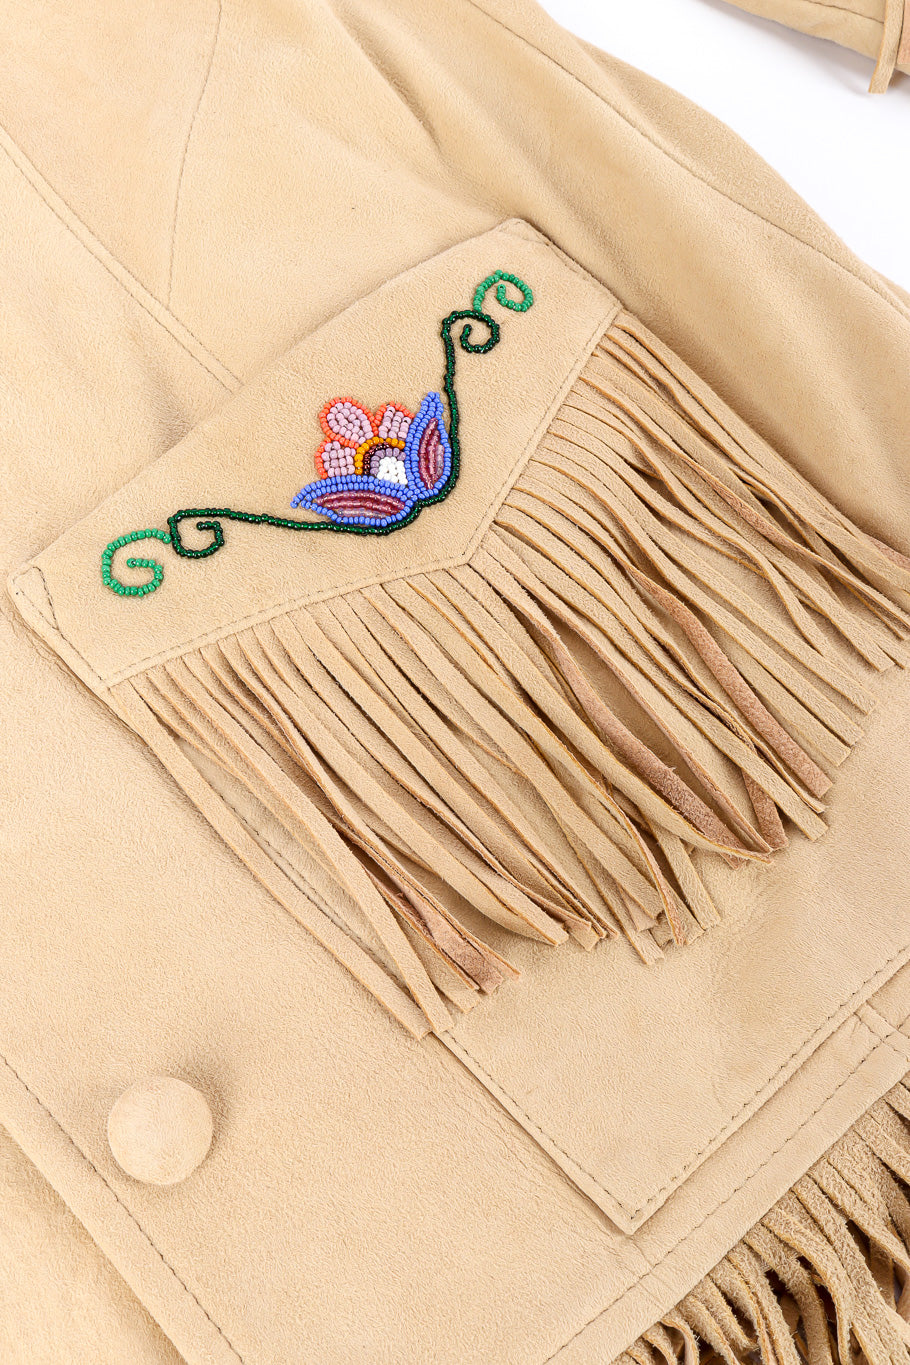 Vintage Char suede fringe jacket front pocket closeup @Recessla